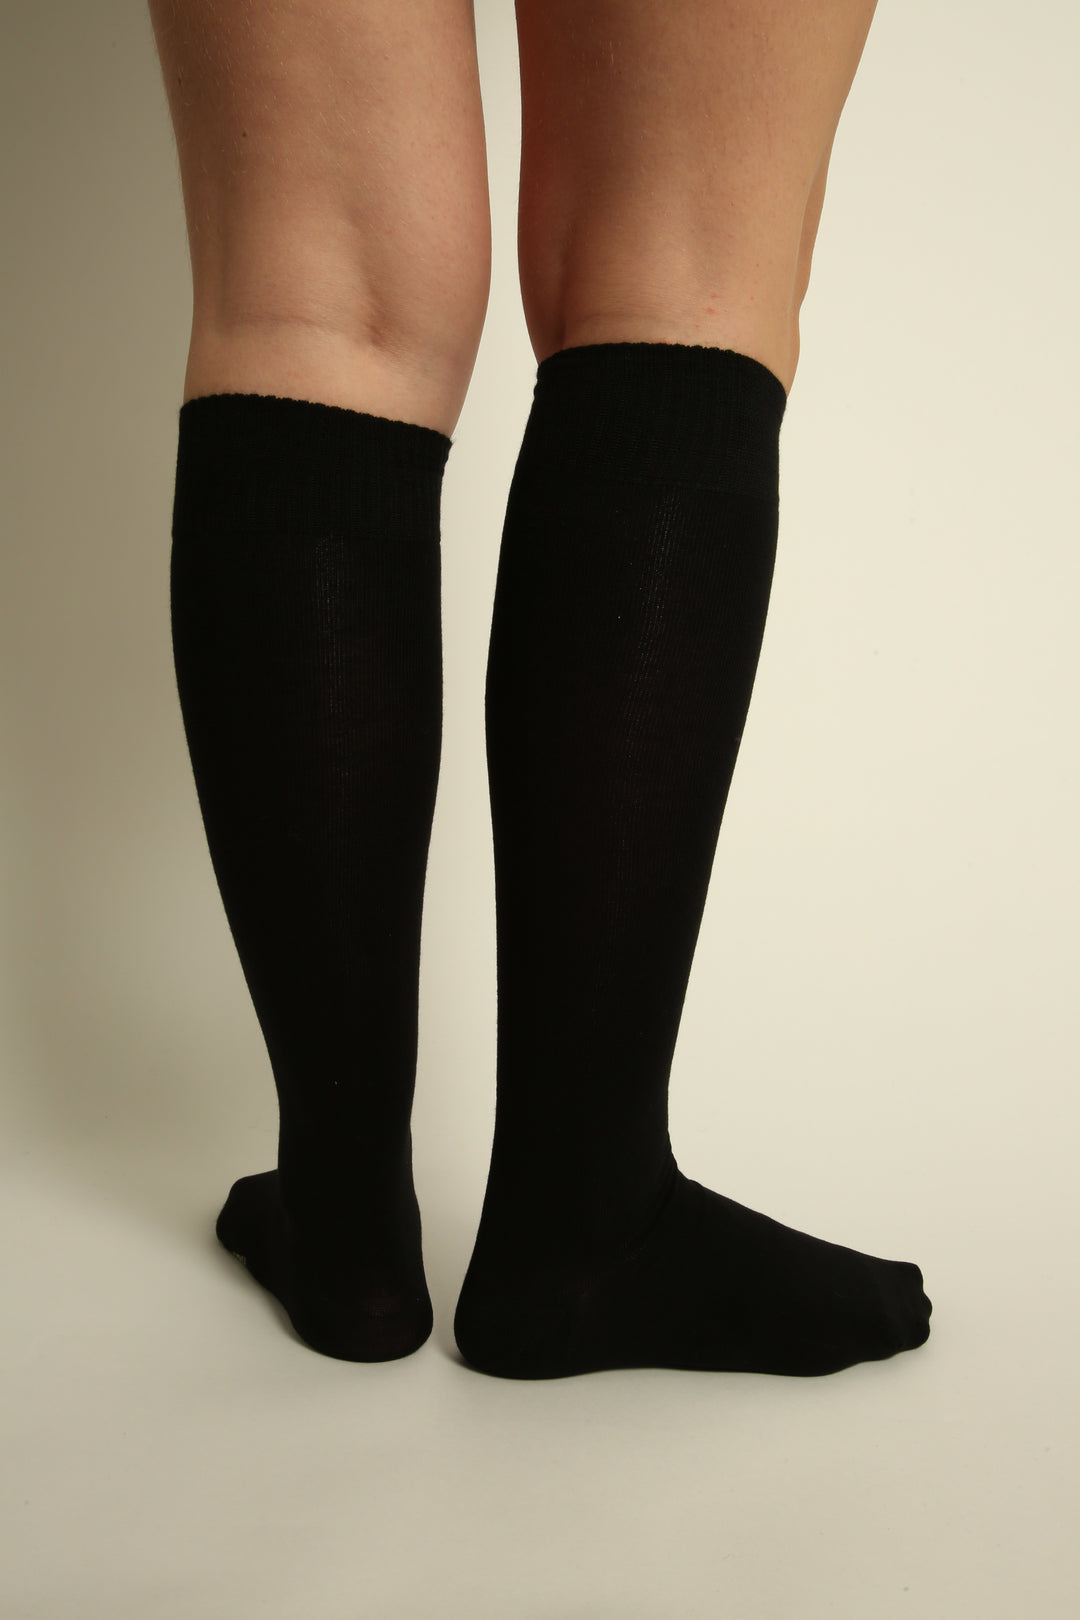 Calcetines negros de bambú sin costuras hasta la rodilla - 4 pares